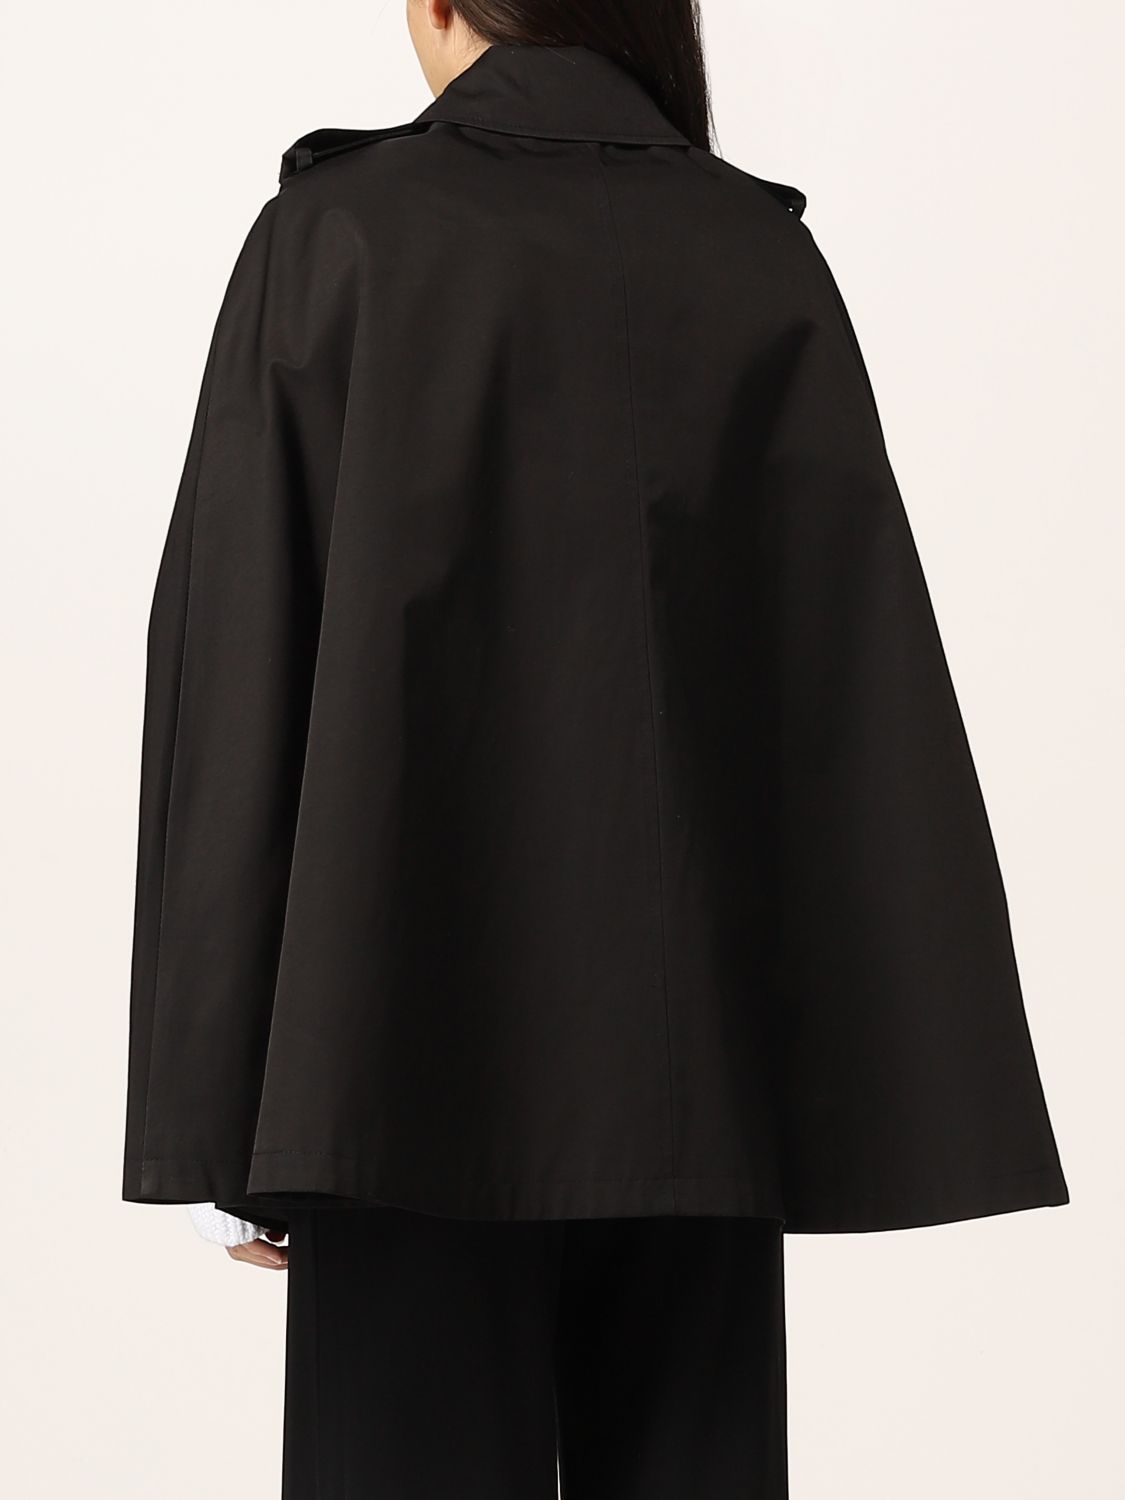 LAUREN RALPH LAUREN: Double-breasted hooded trench coat - Black ...